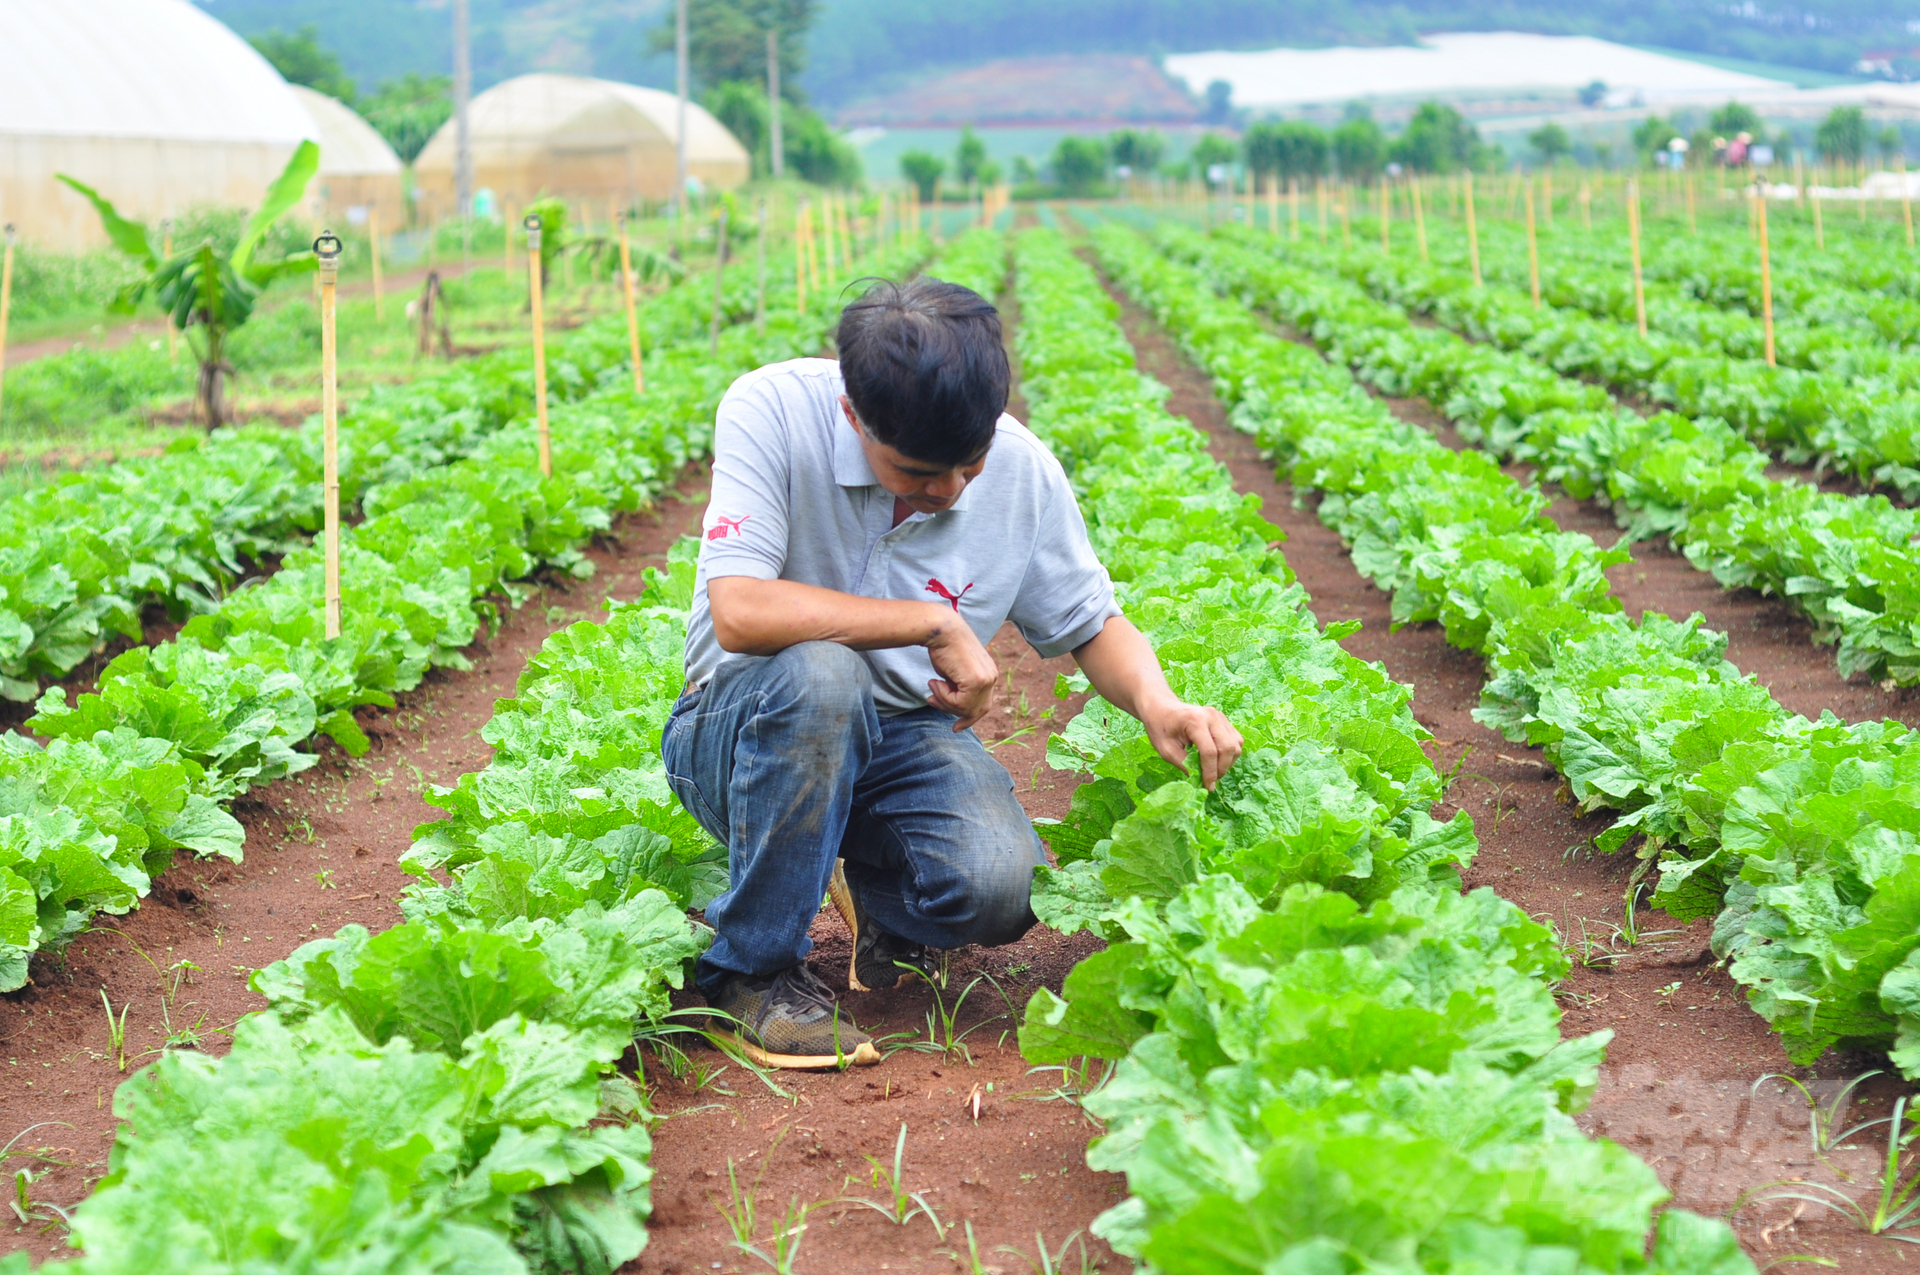 Mô hình nông nghiệp hữu cơ của một hộ nông dân tại huyện Đơn Dương, Lâm Đồng. Ảnh: Minh Hậu.